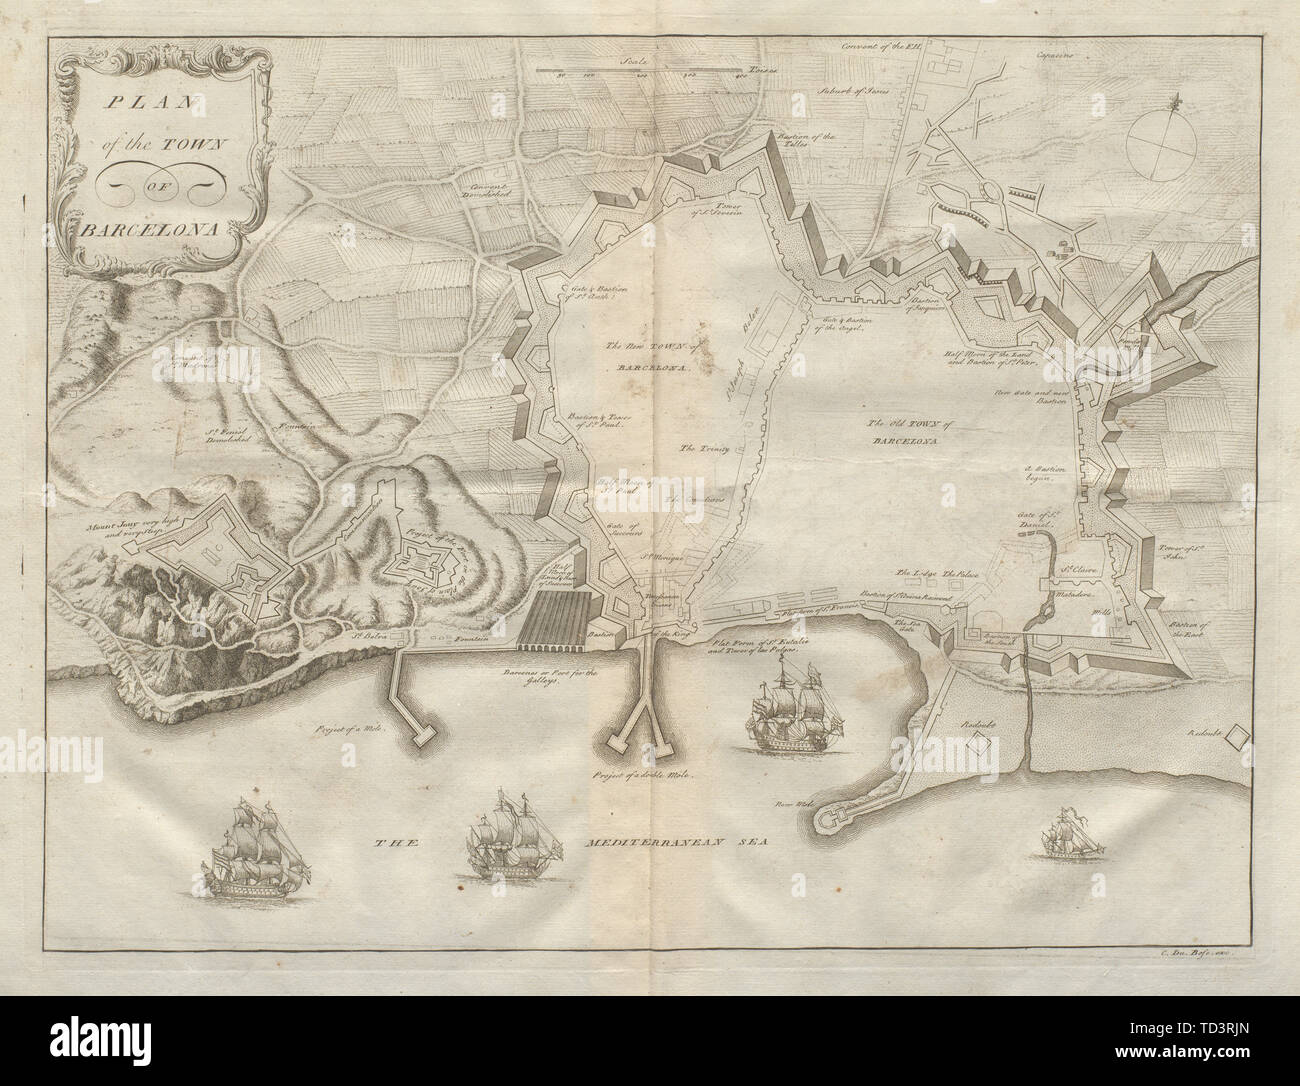 Pianta della città di Barcellona. Spagna. DU BOSC 1736 antica mappa grafico Foto Stock